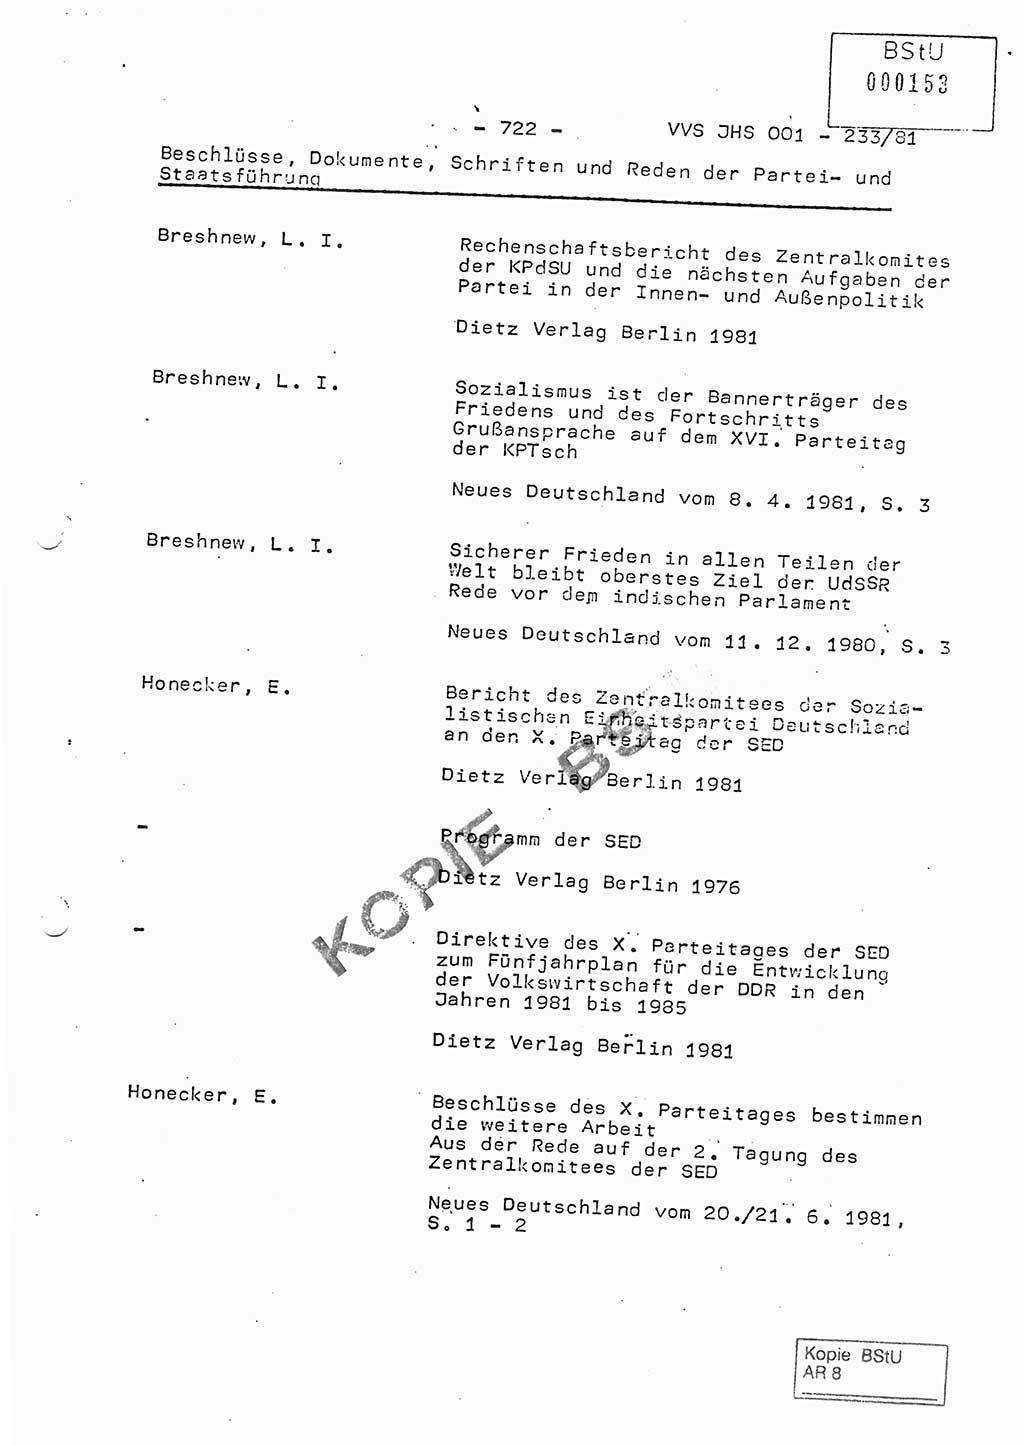 Dissertation Oberstleutnant Horst Zank (JHS), Oberstleutnant Dr. Karl-Heinz Knoblauch (JHS), Oberstleutnant Gustav-Adolf Kowalewski (HA Ⅸ), Oberstleutnant Wolfgang Plötner (HA Ⅸ), Ministerium für Staatssicherheit (MfS) [Deutsche Demokratische Republik (DDR)], Juristische Hochschule (JHS), Vertrauliche Verschlußsache (VVS) o001-233/81, Potsdam 1981, Blatt 722 (Diss. MfS DDR JHS VVS o001-233/81 1981, Bl. 722)